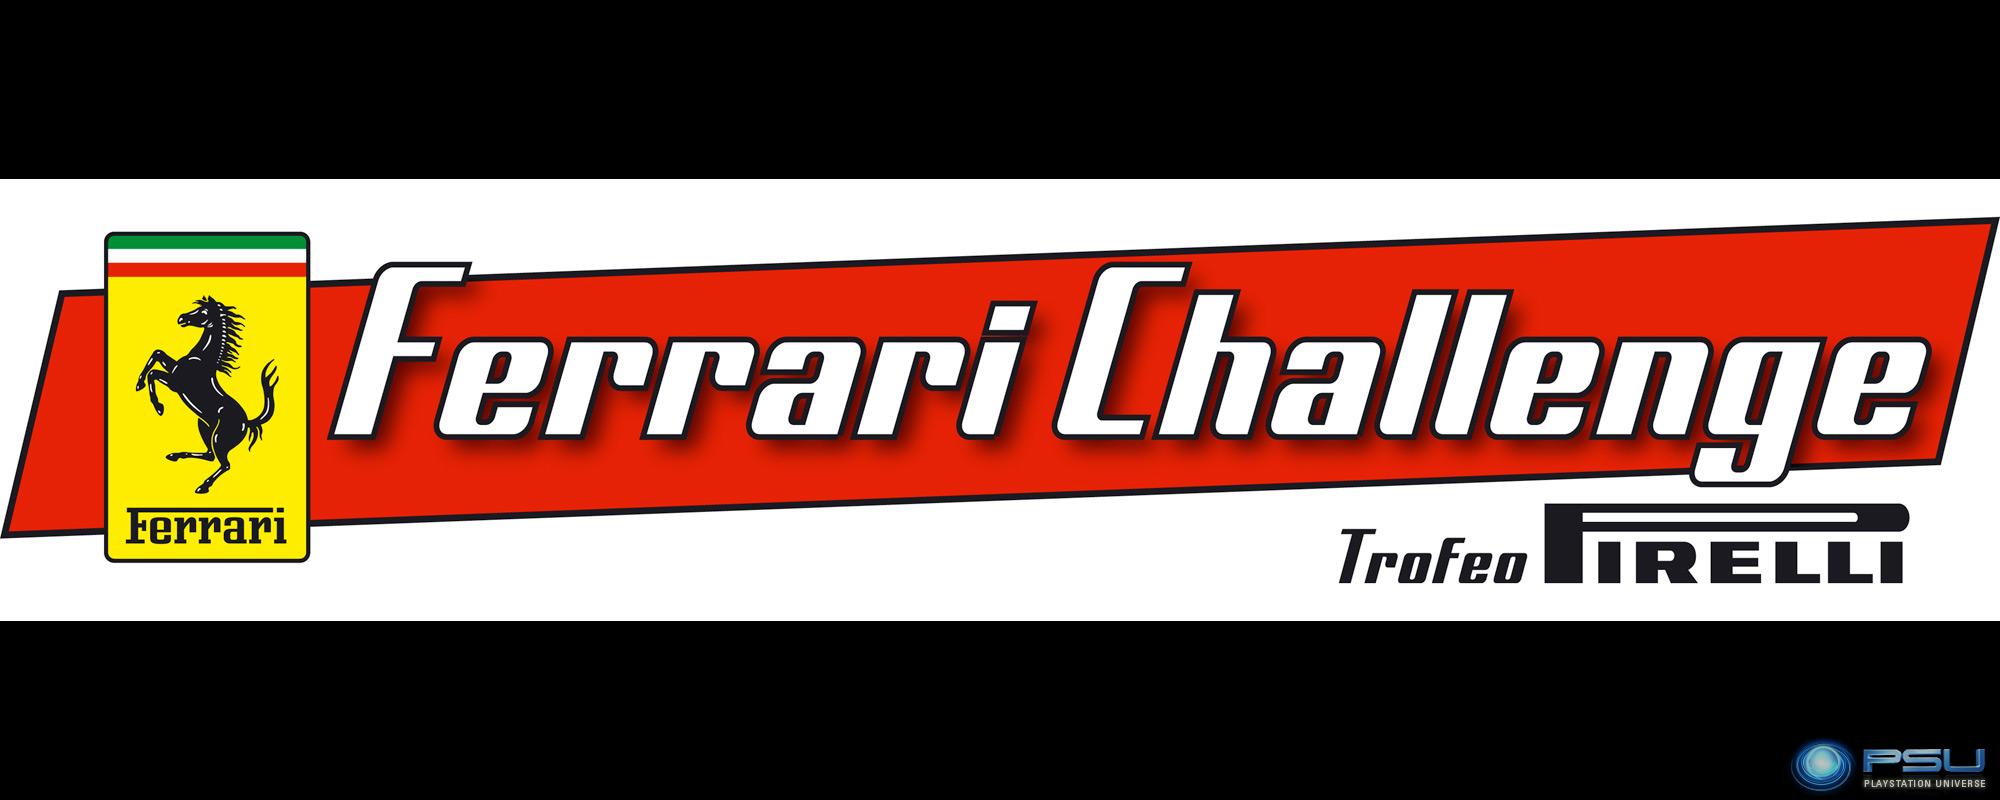 Ferrari Challenge Trofeo Pirelli #25